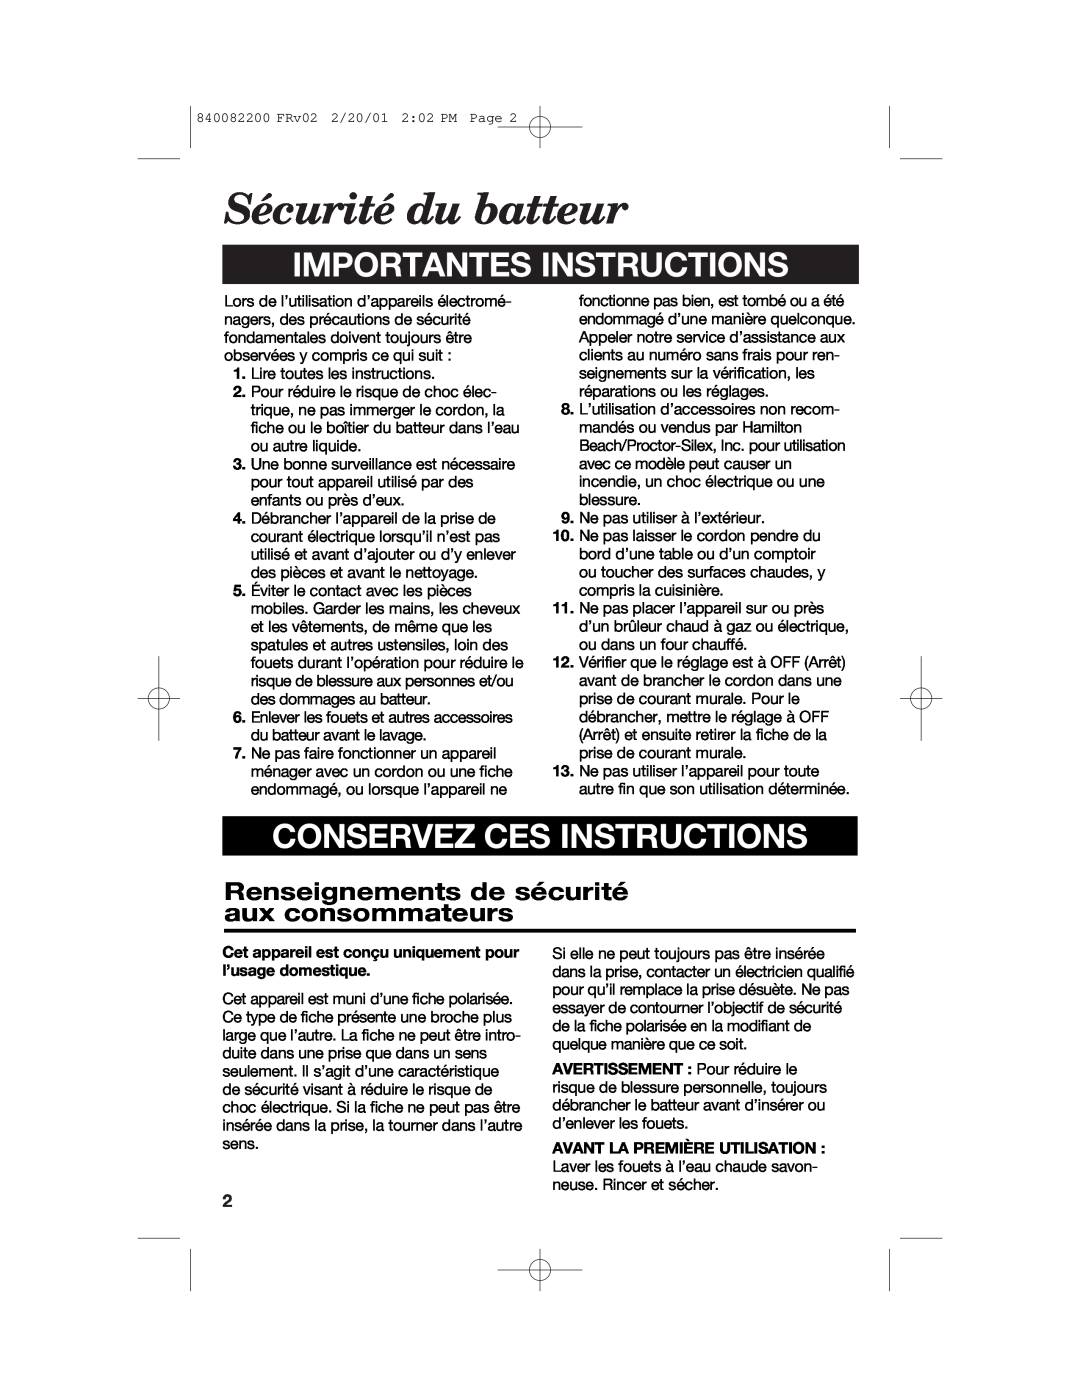 Hamilton Beach 62695RC manual Sécurité du batteur, Renseignements de sécurité aux consommateurs, Importantes Instructions 